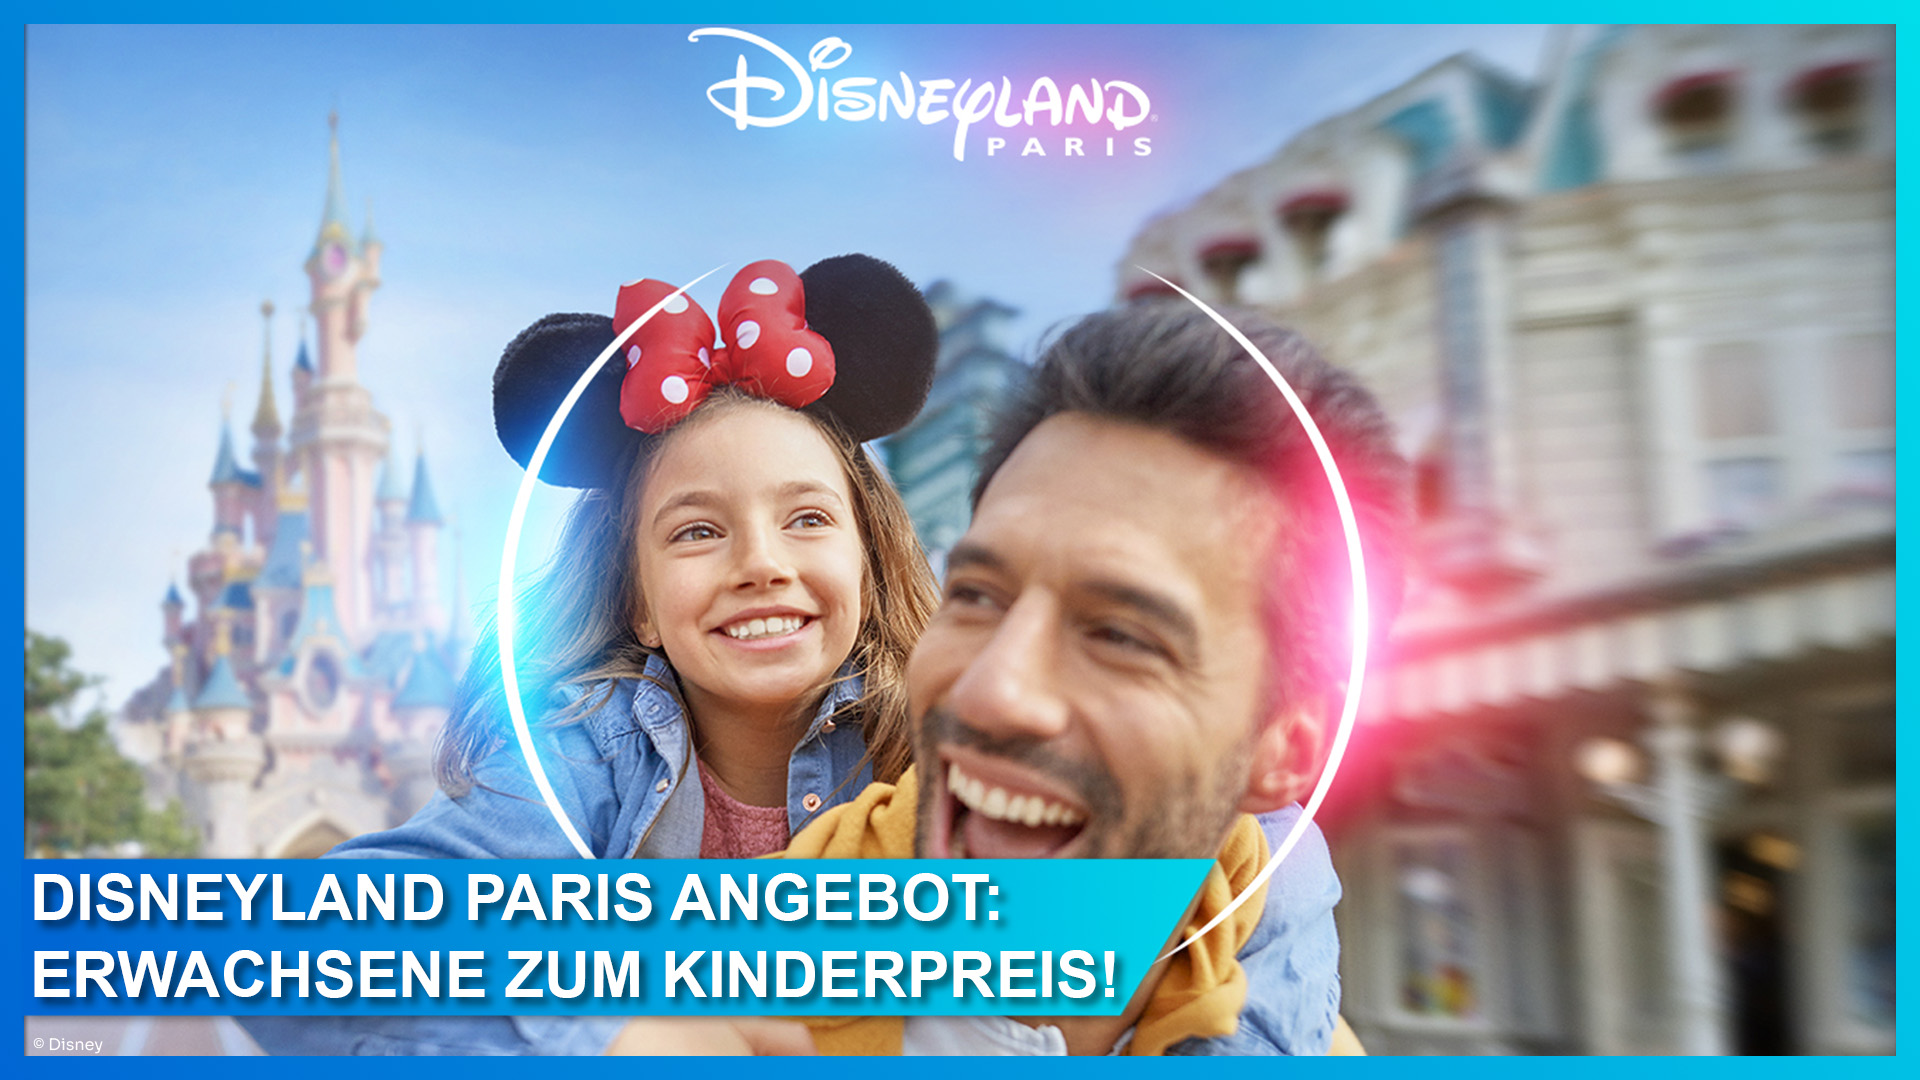 Disneyland Paris Angebot: Tickets für Erwachsene zum Kinderpreis